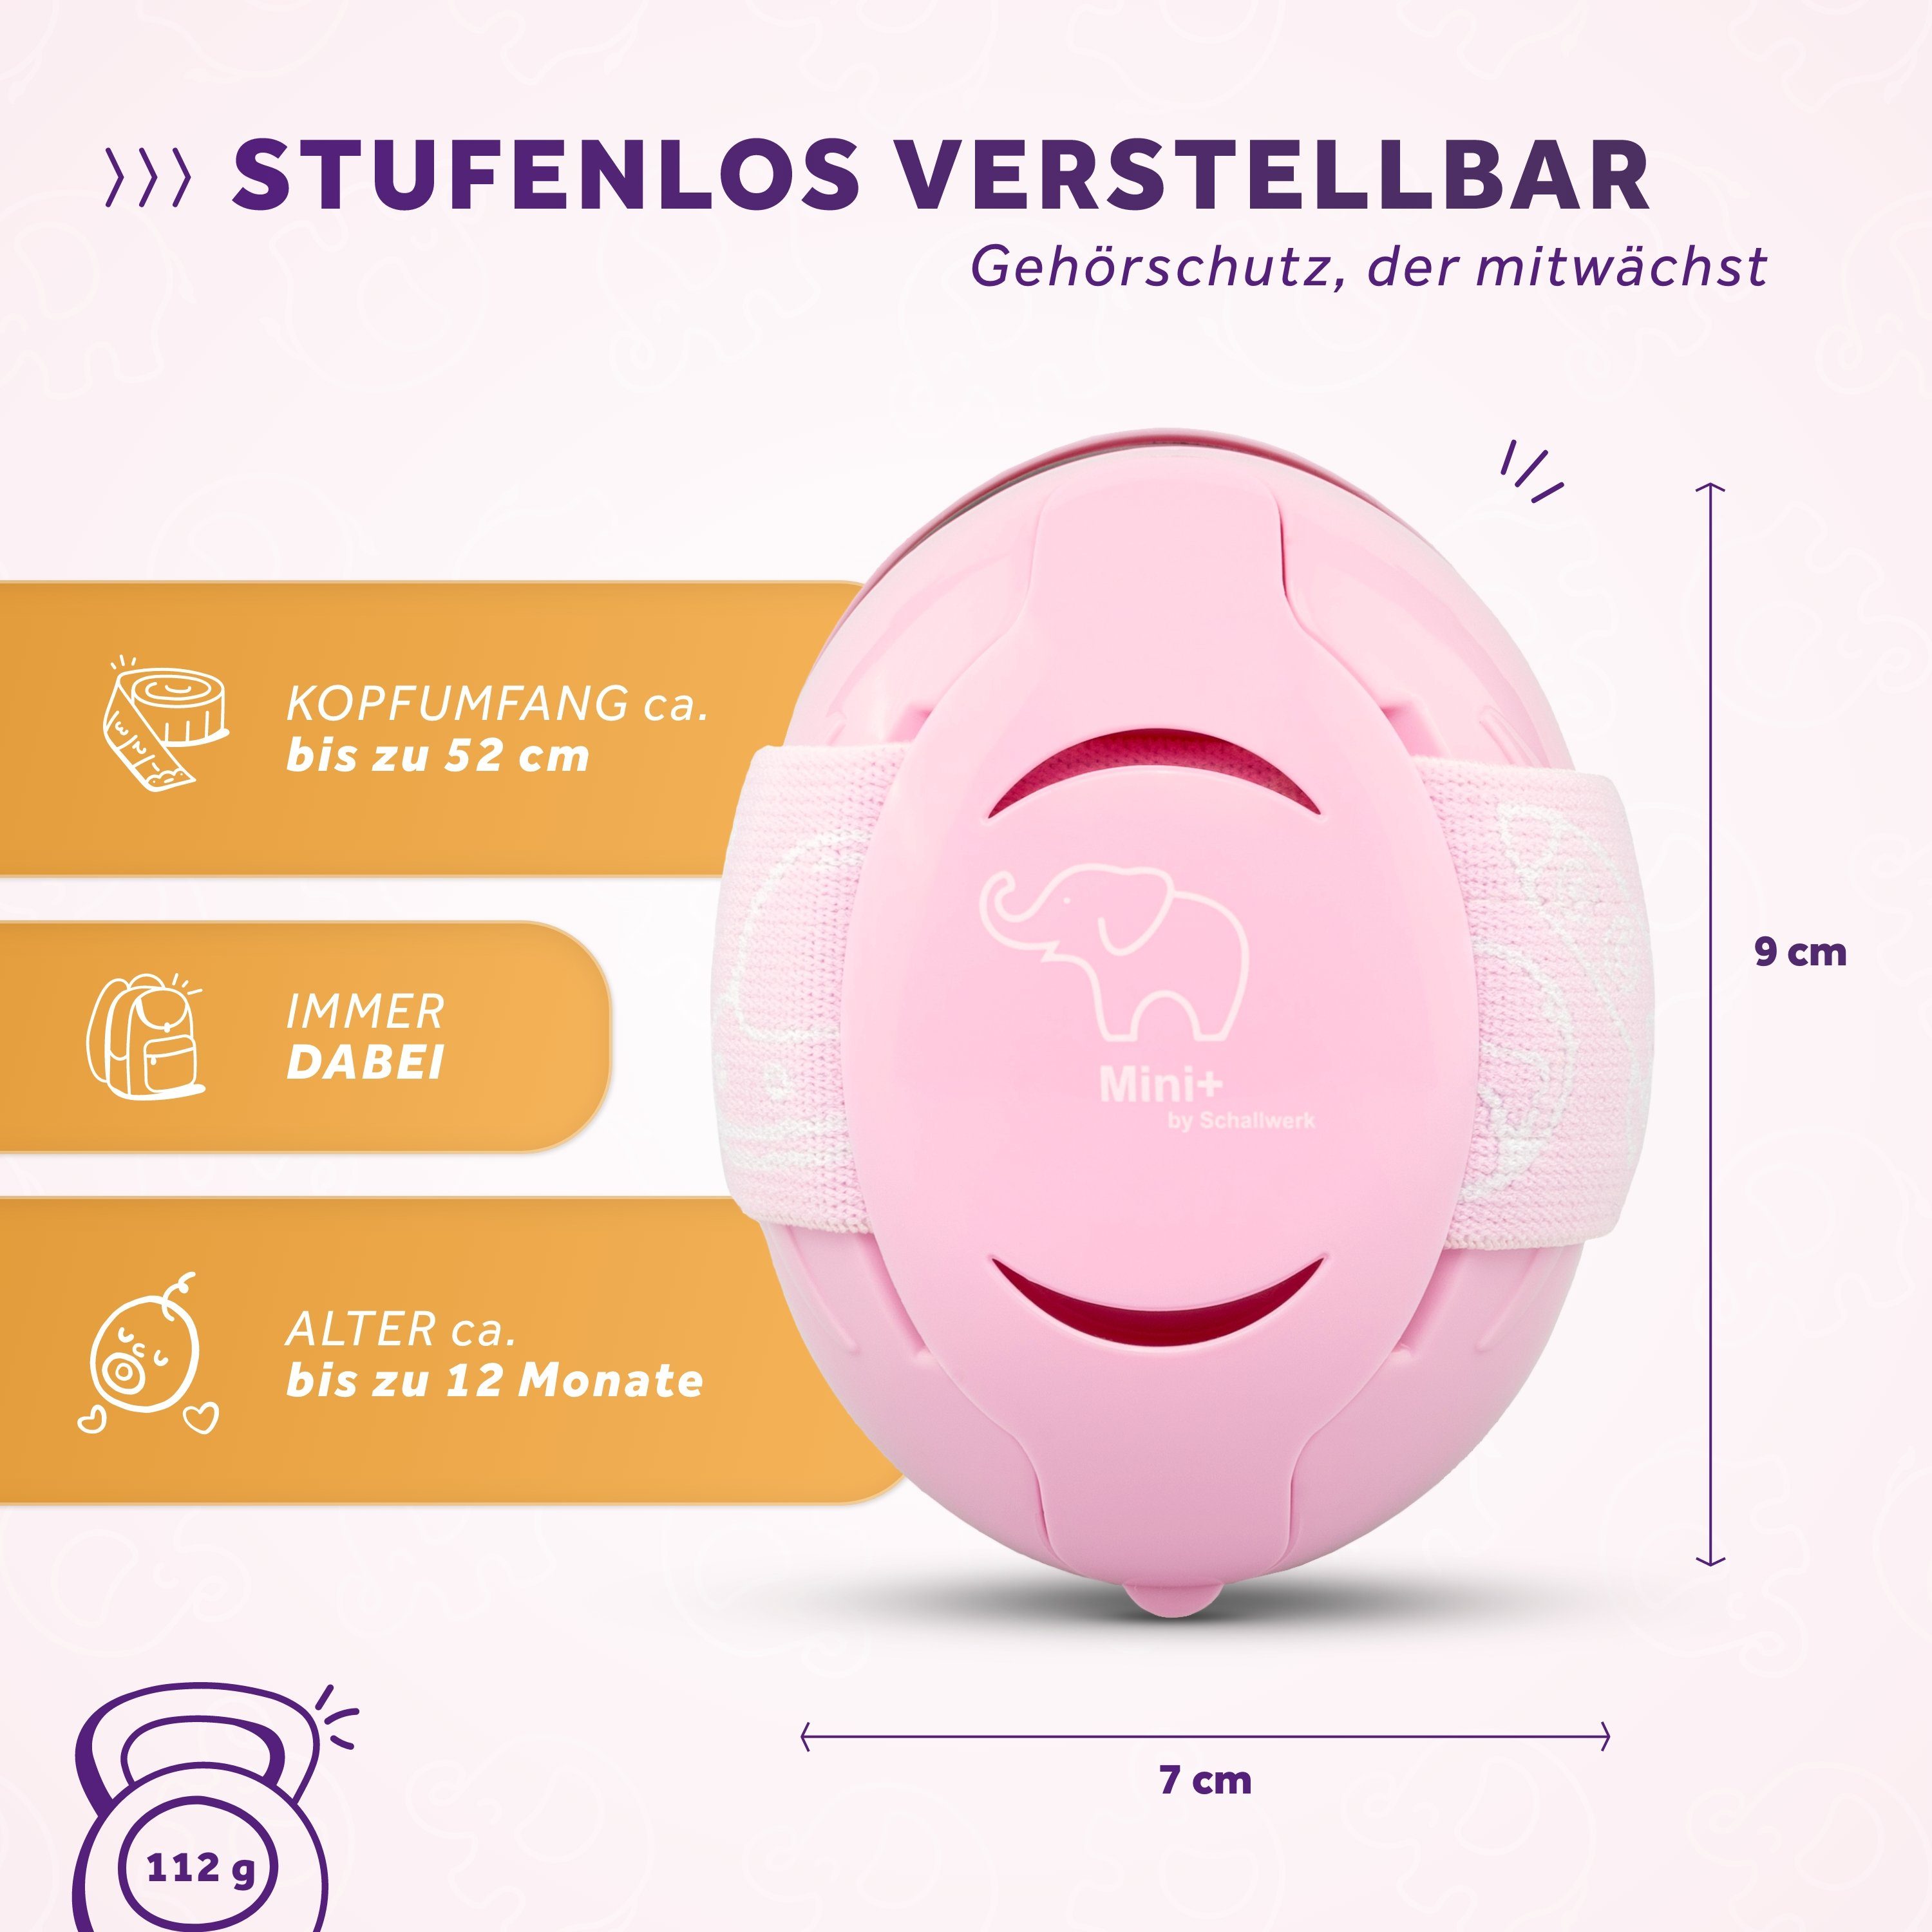 – Gehörschutz Kleinkind Schallwerk Rosa Mini+ Kapselgehörschutz Kinder Kapselgehörschutz Schallwerk® für